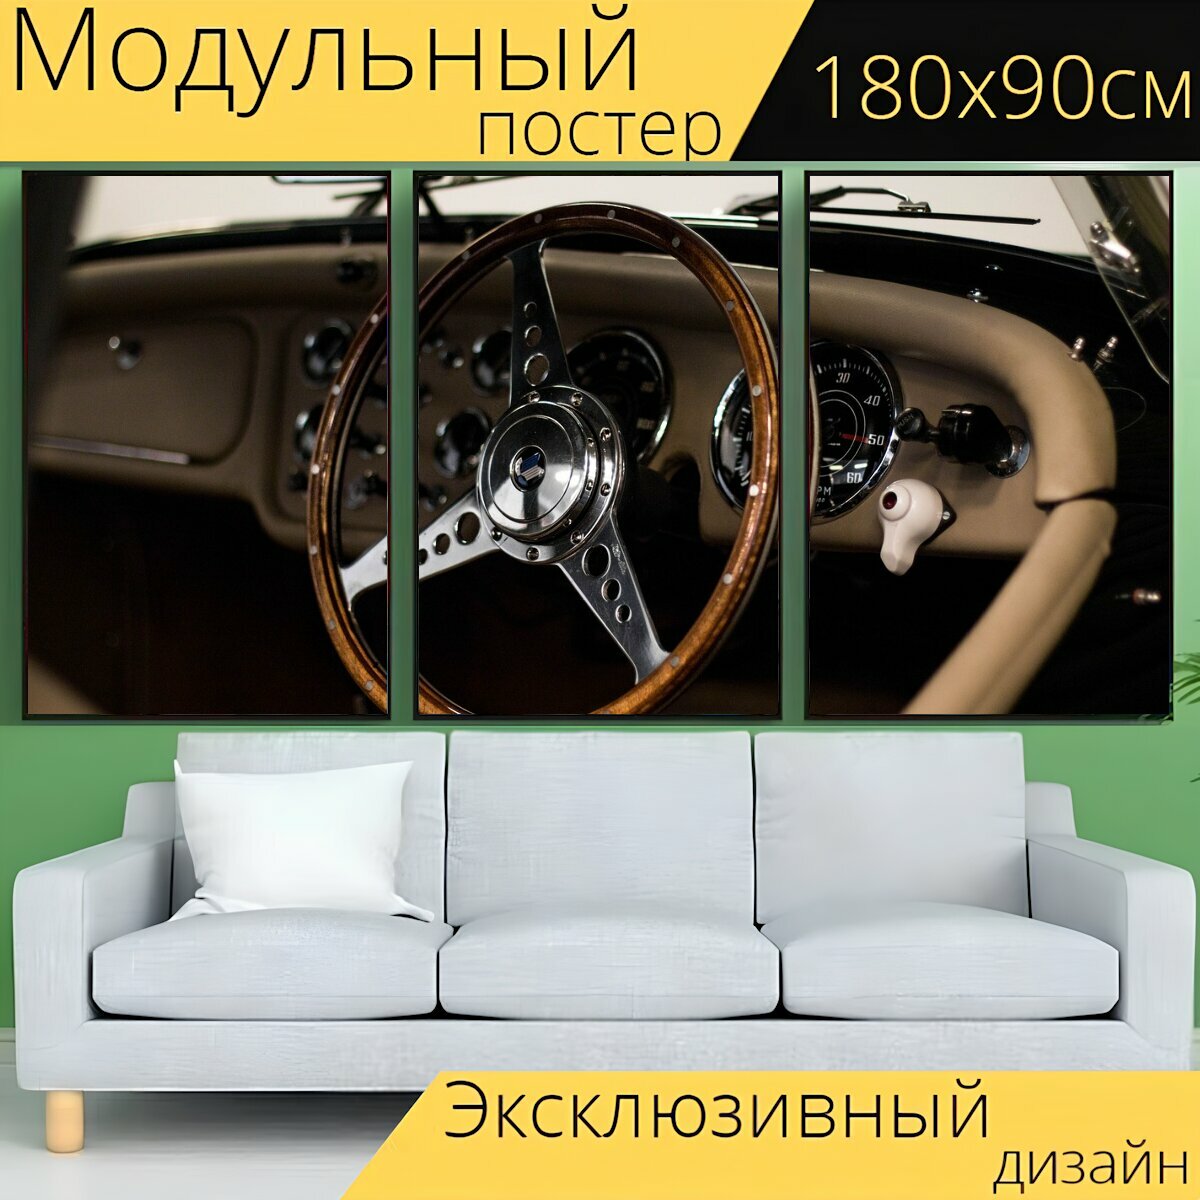 Модульный постер "Рулевое колесо, машина, рулевое управление" 180 x 90 см. для интерьера